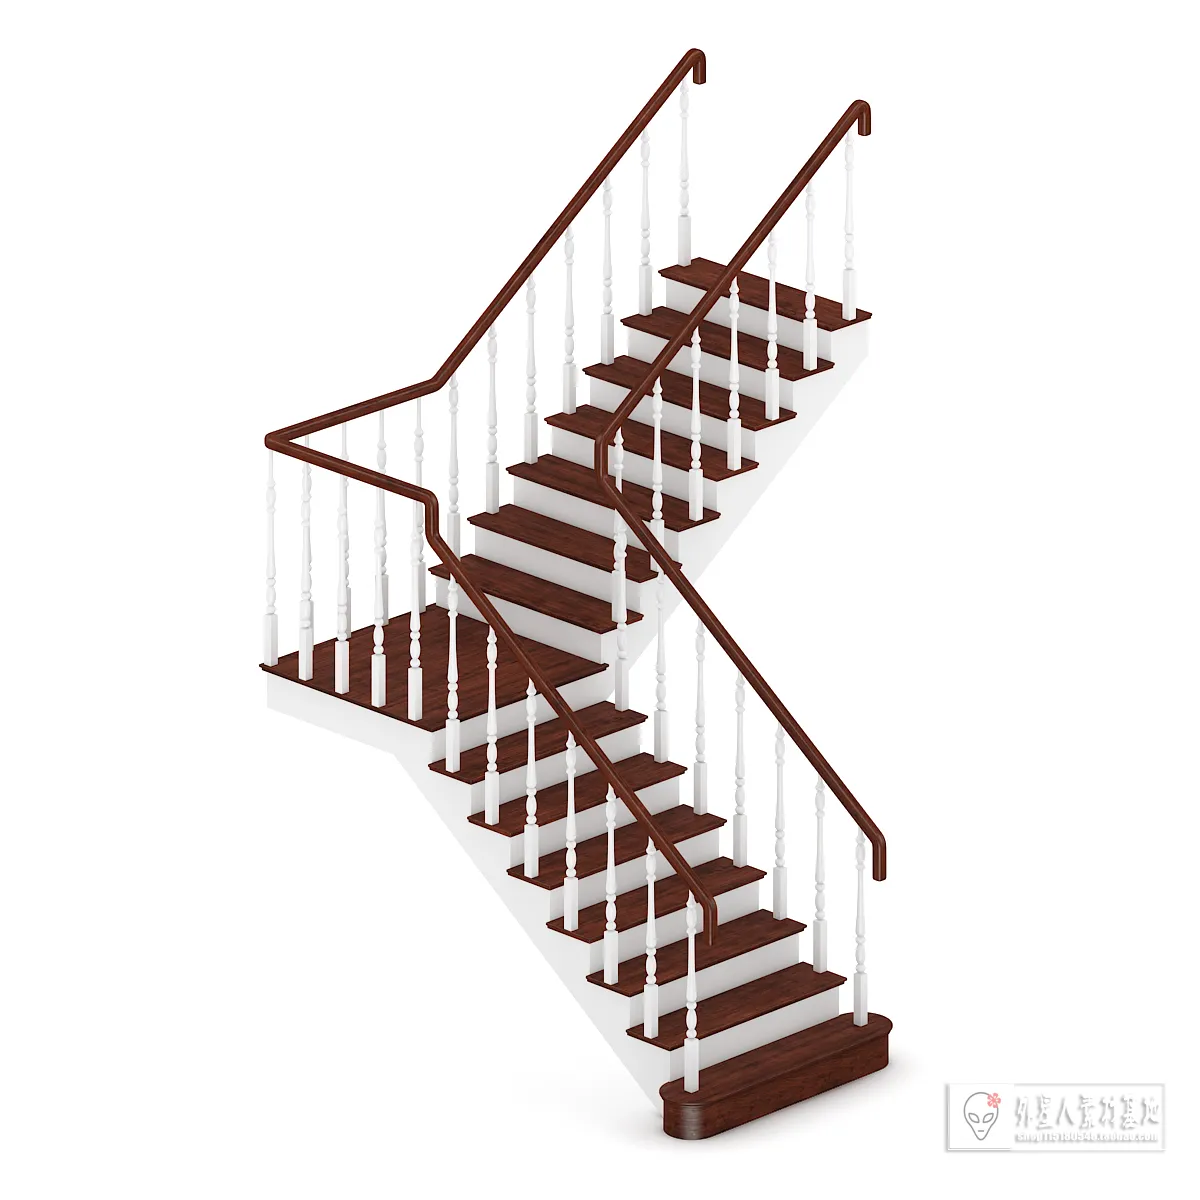 3DSKY PRO MODELS – STAIR 3D MODELS – 019